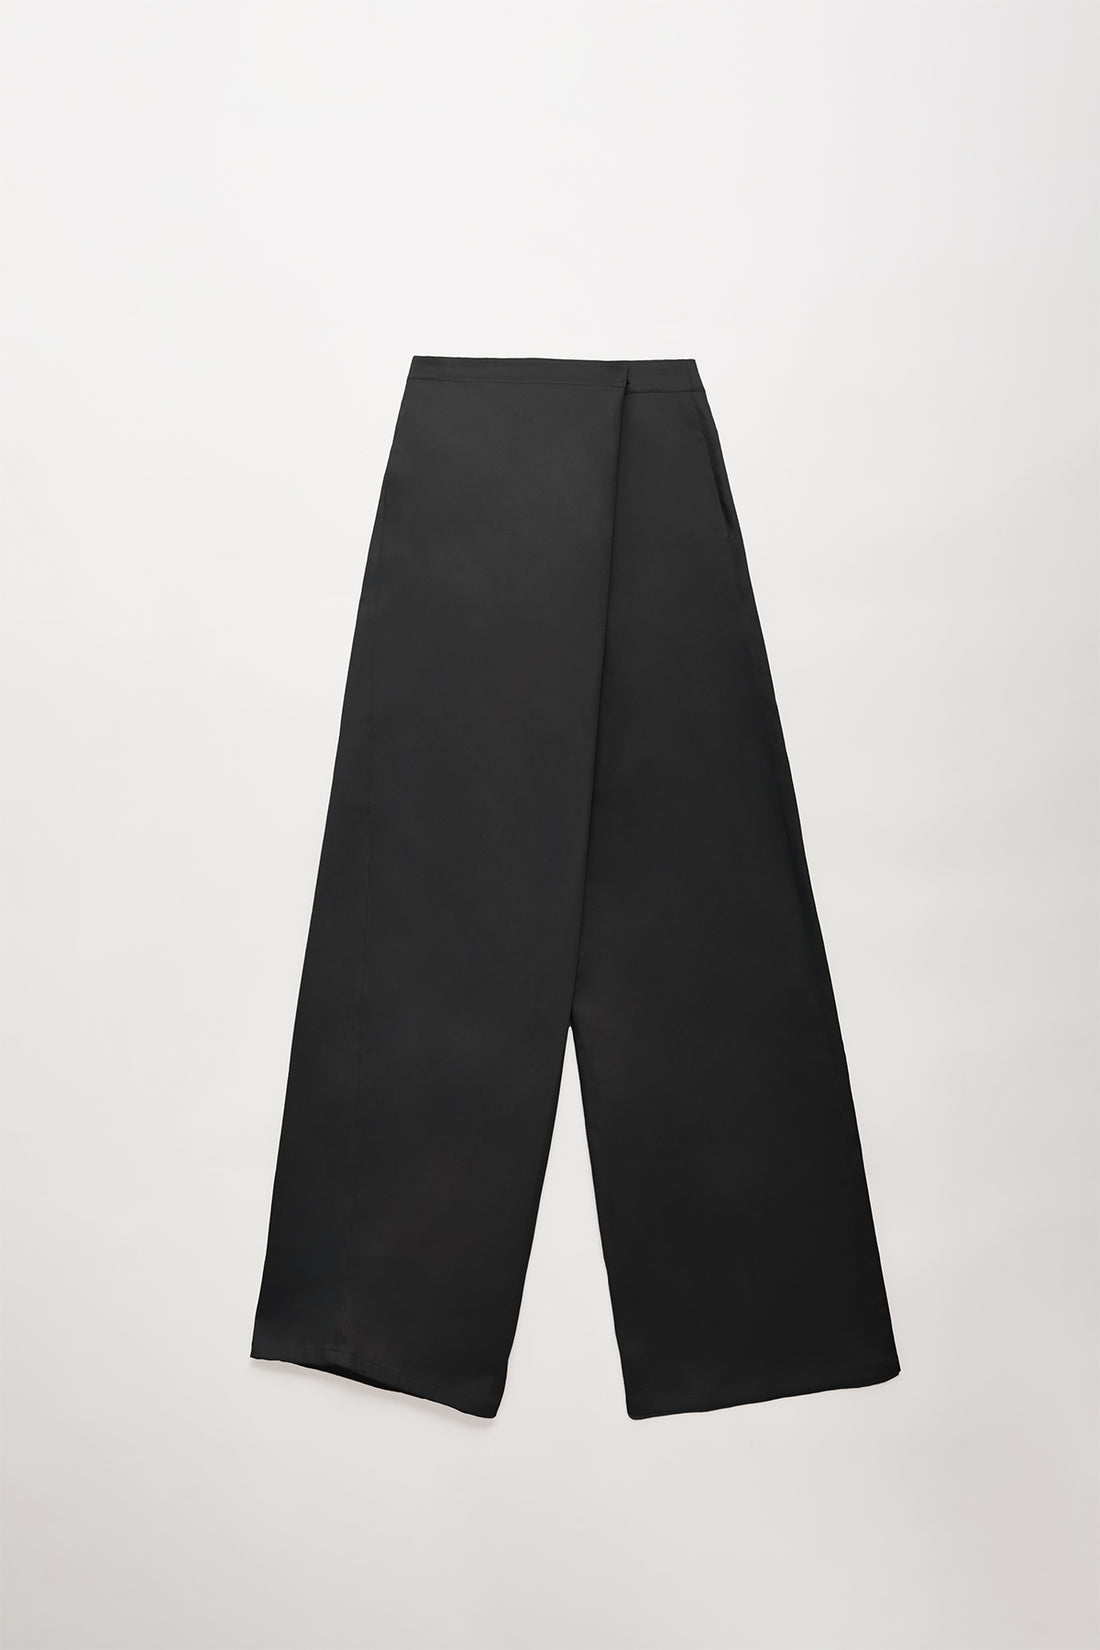 Ximena Black pants